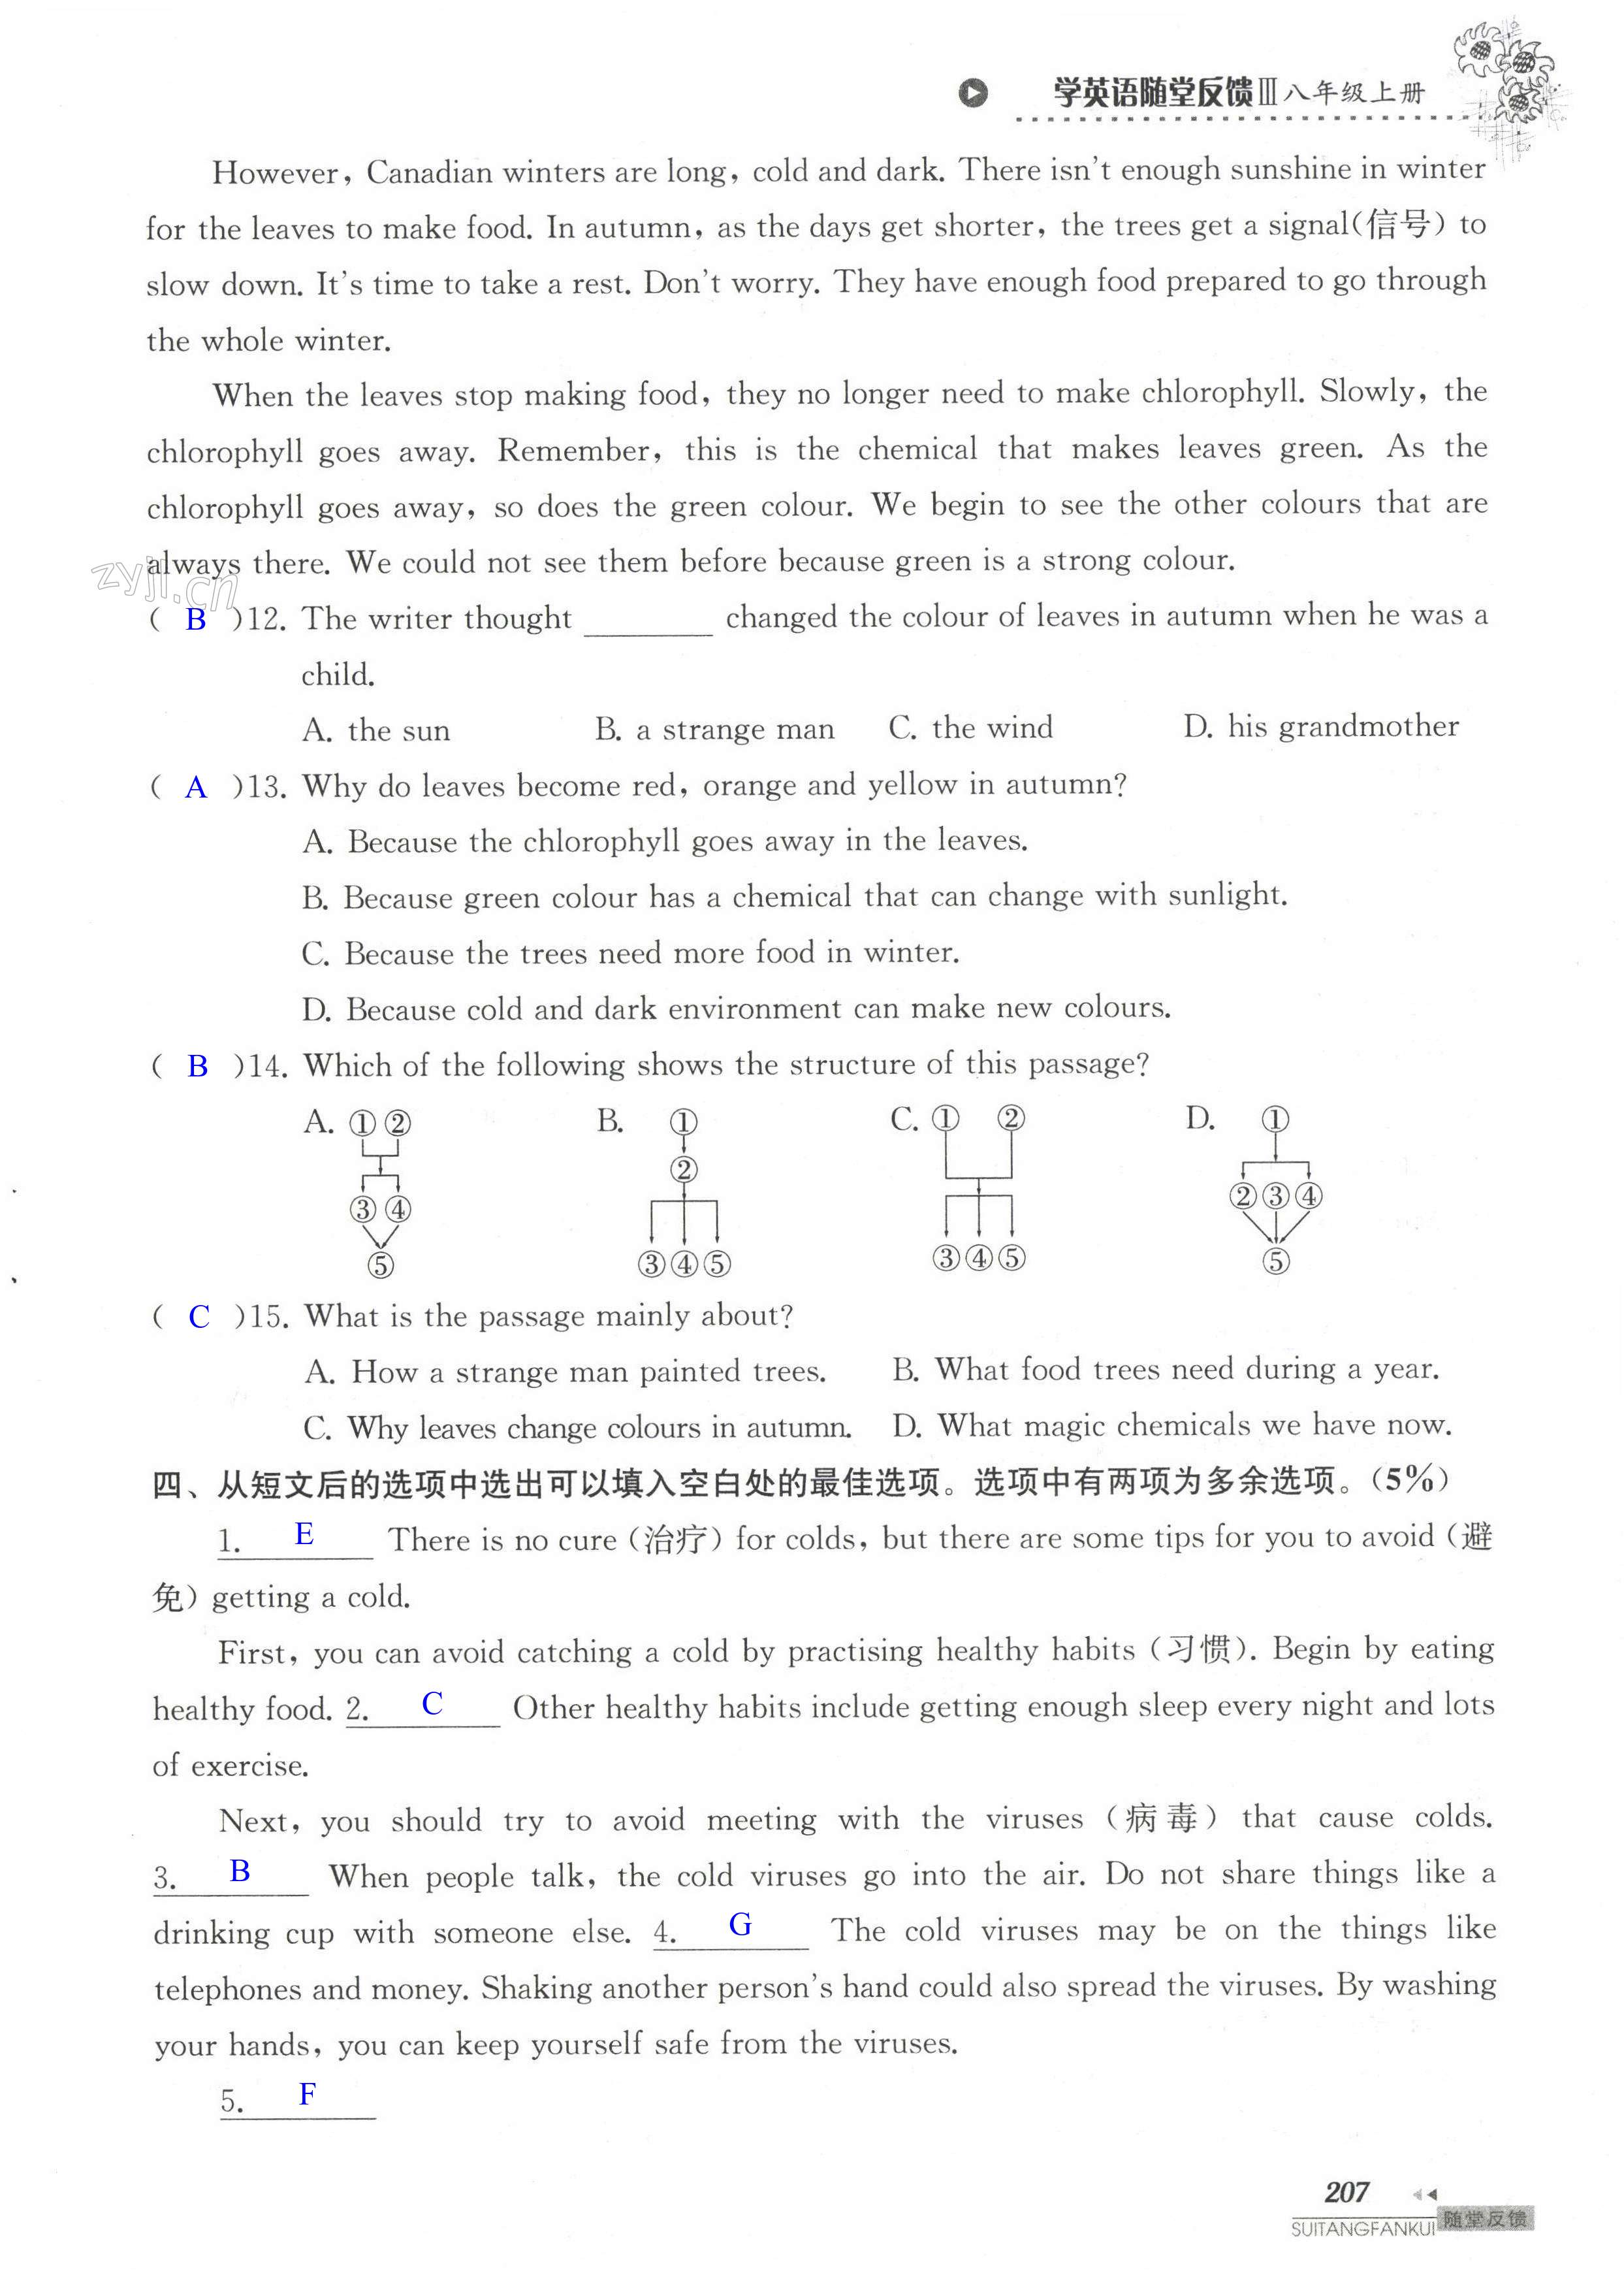 单元综合测试卷 Test for Unit 7 of 8A - 第207页